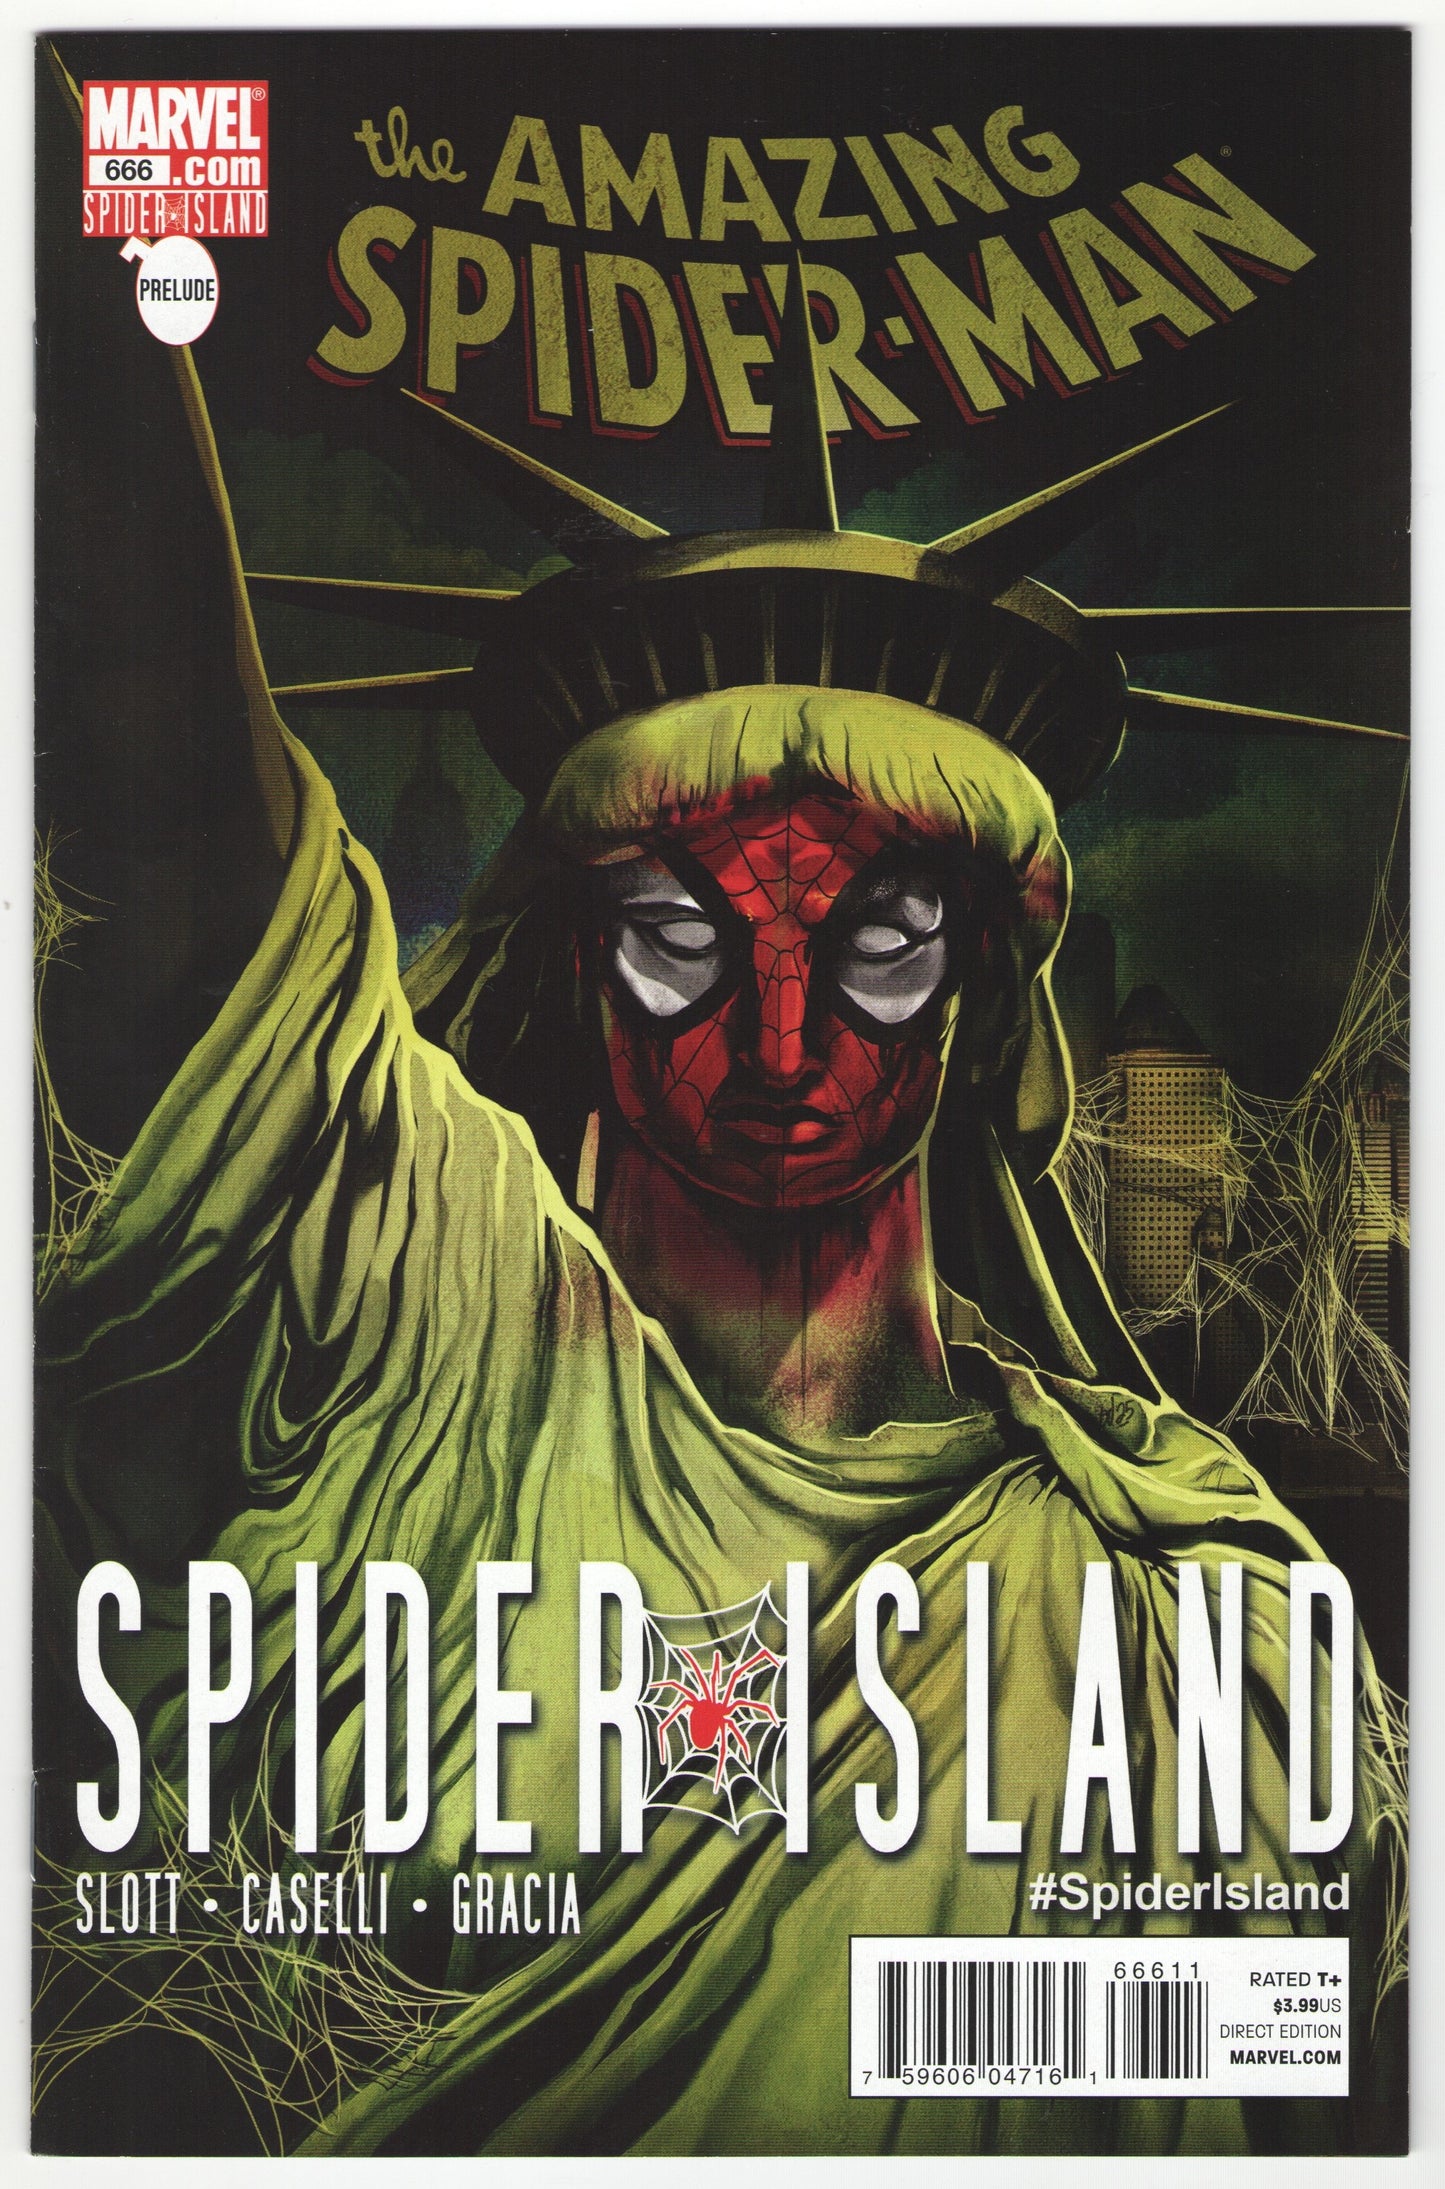 Amazing Spider-Man "Spider Island" Story Arc (2011)